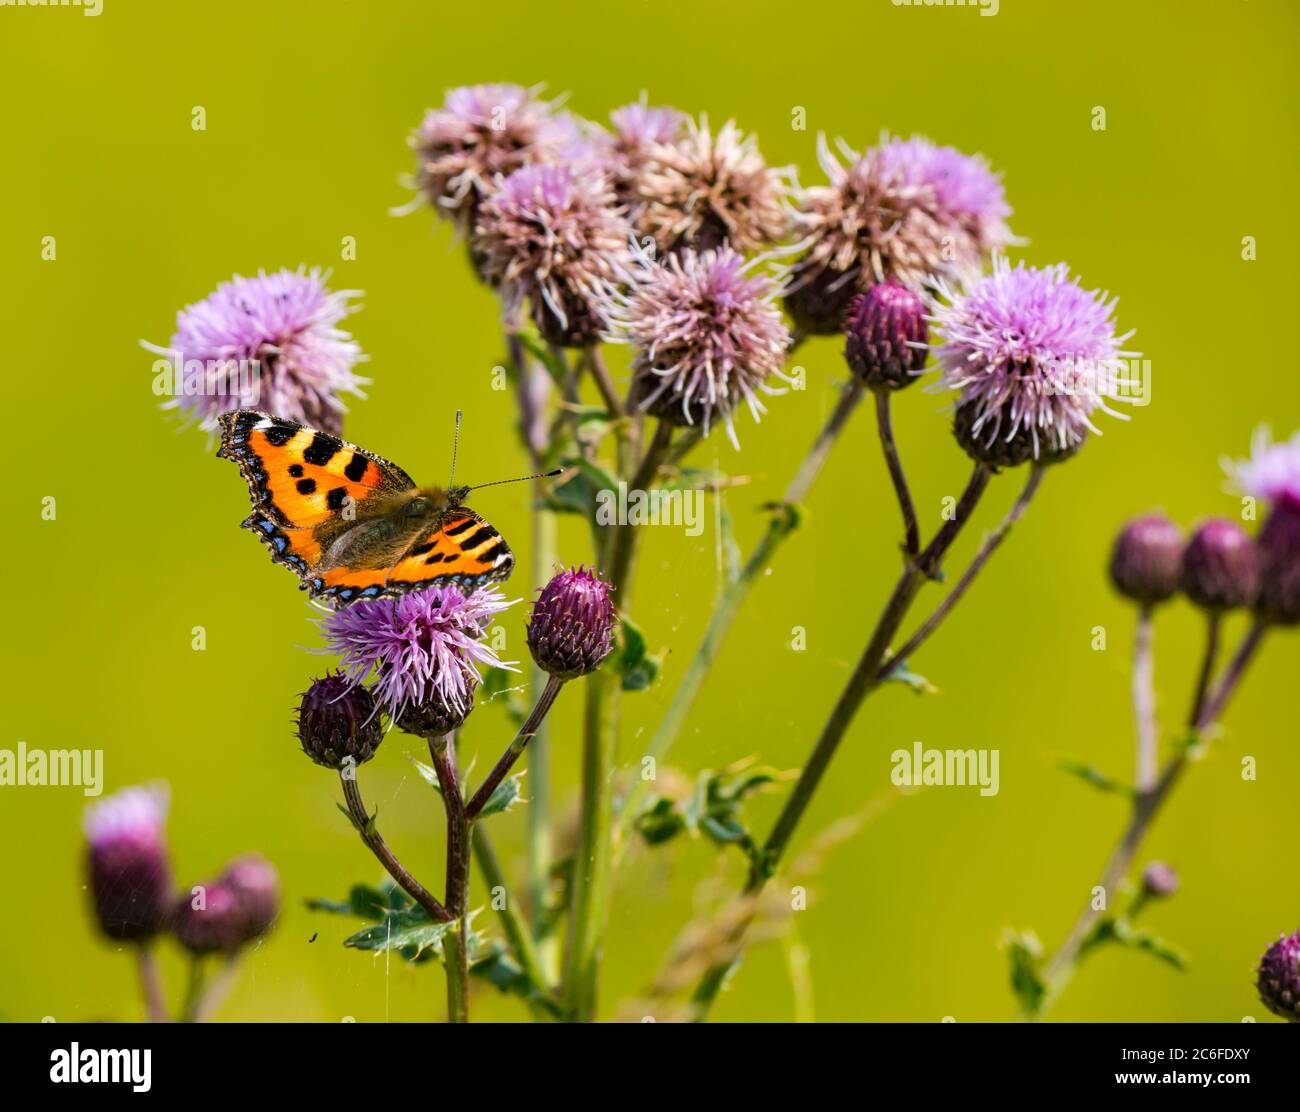 Kleiner Schildpatt-Schmetterling (Aglais urticae) auf Disteln im Sommer Sonnenschein, East Lothian, Schottland, Großbritannien Stockfoto